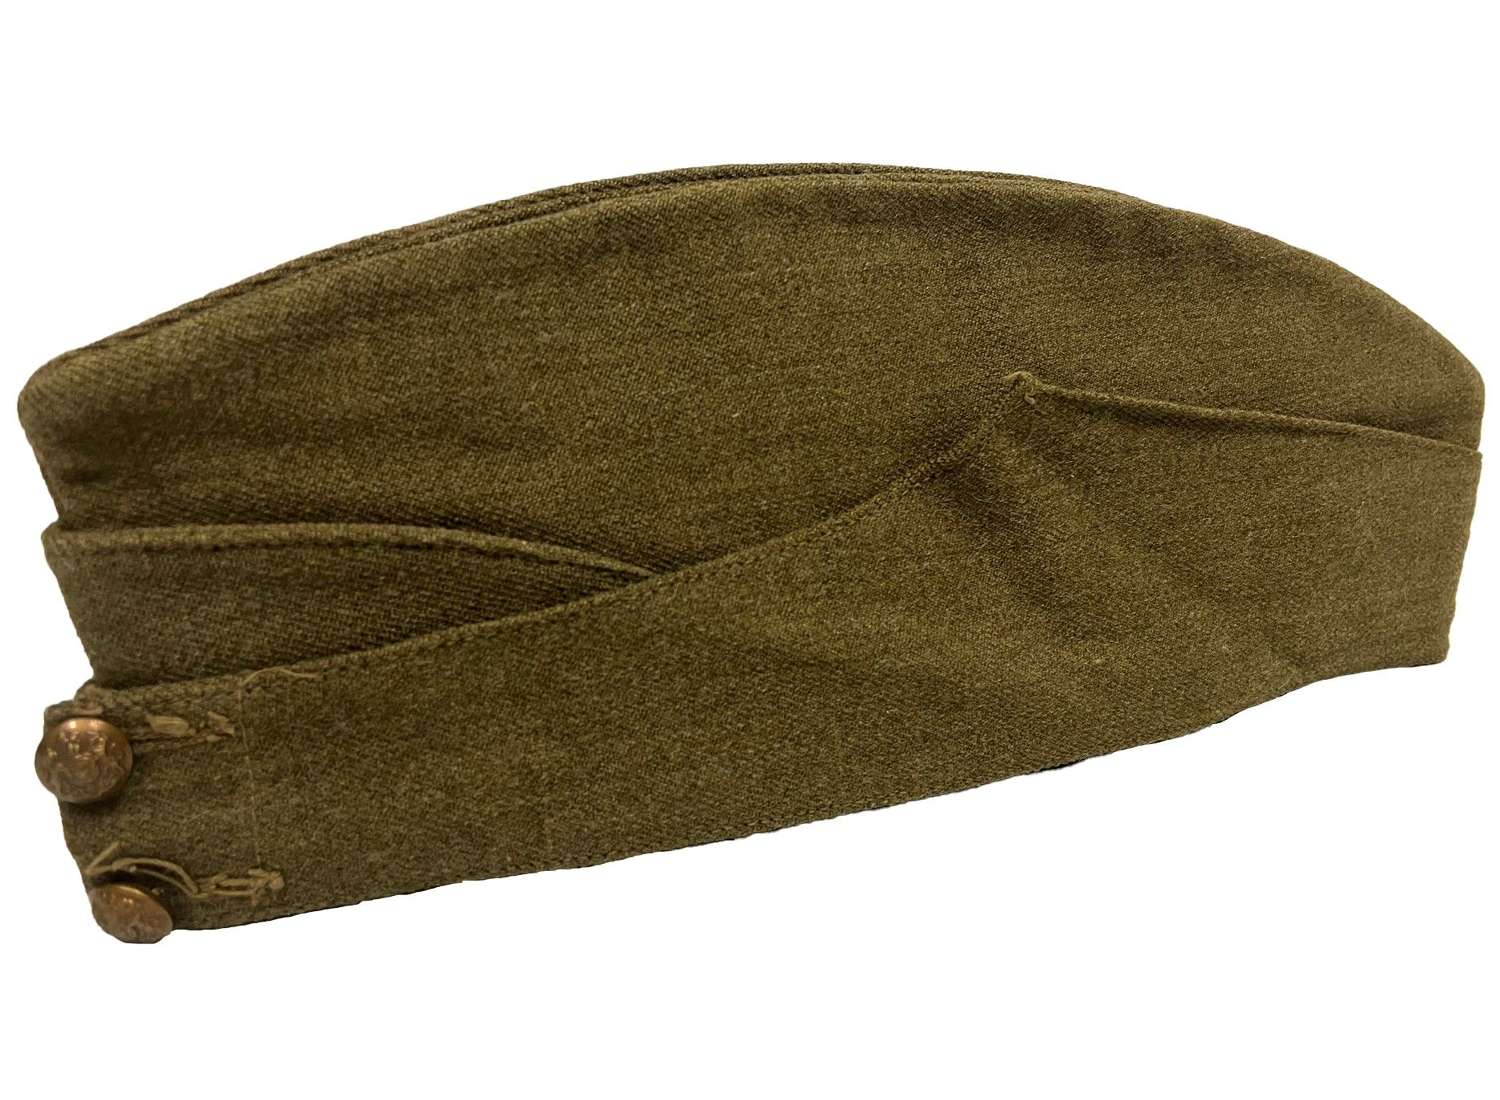 Original 1941 Dated British Army Field Service Cap